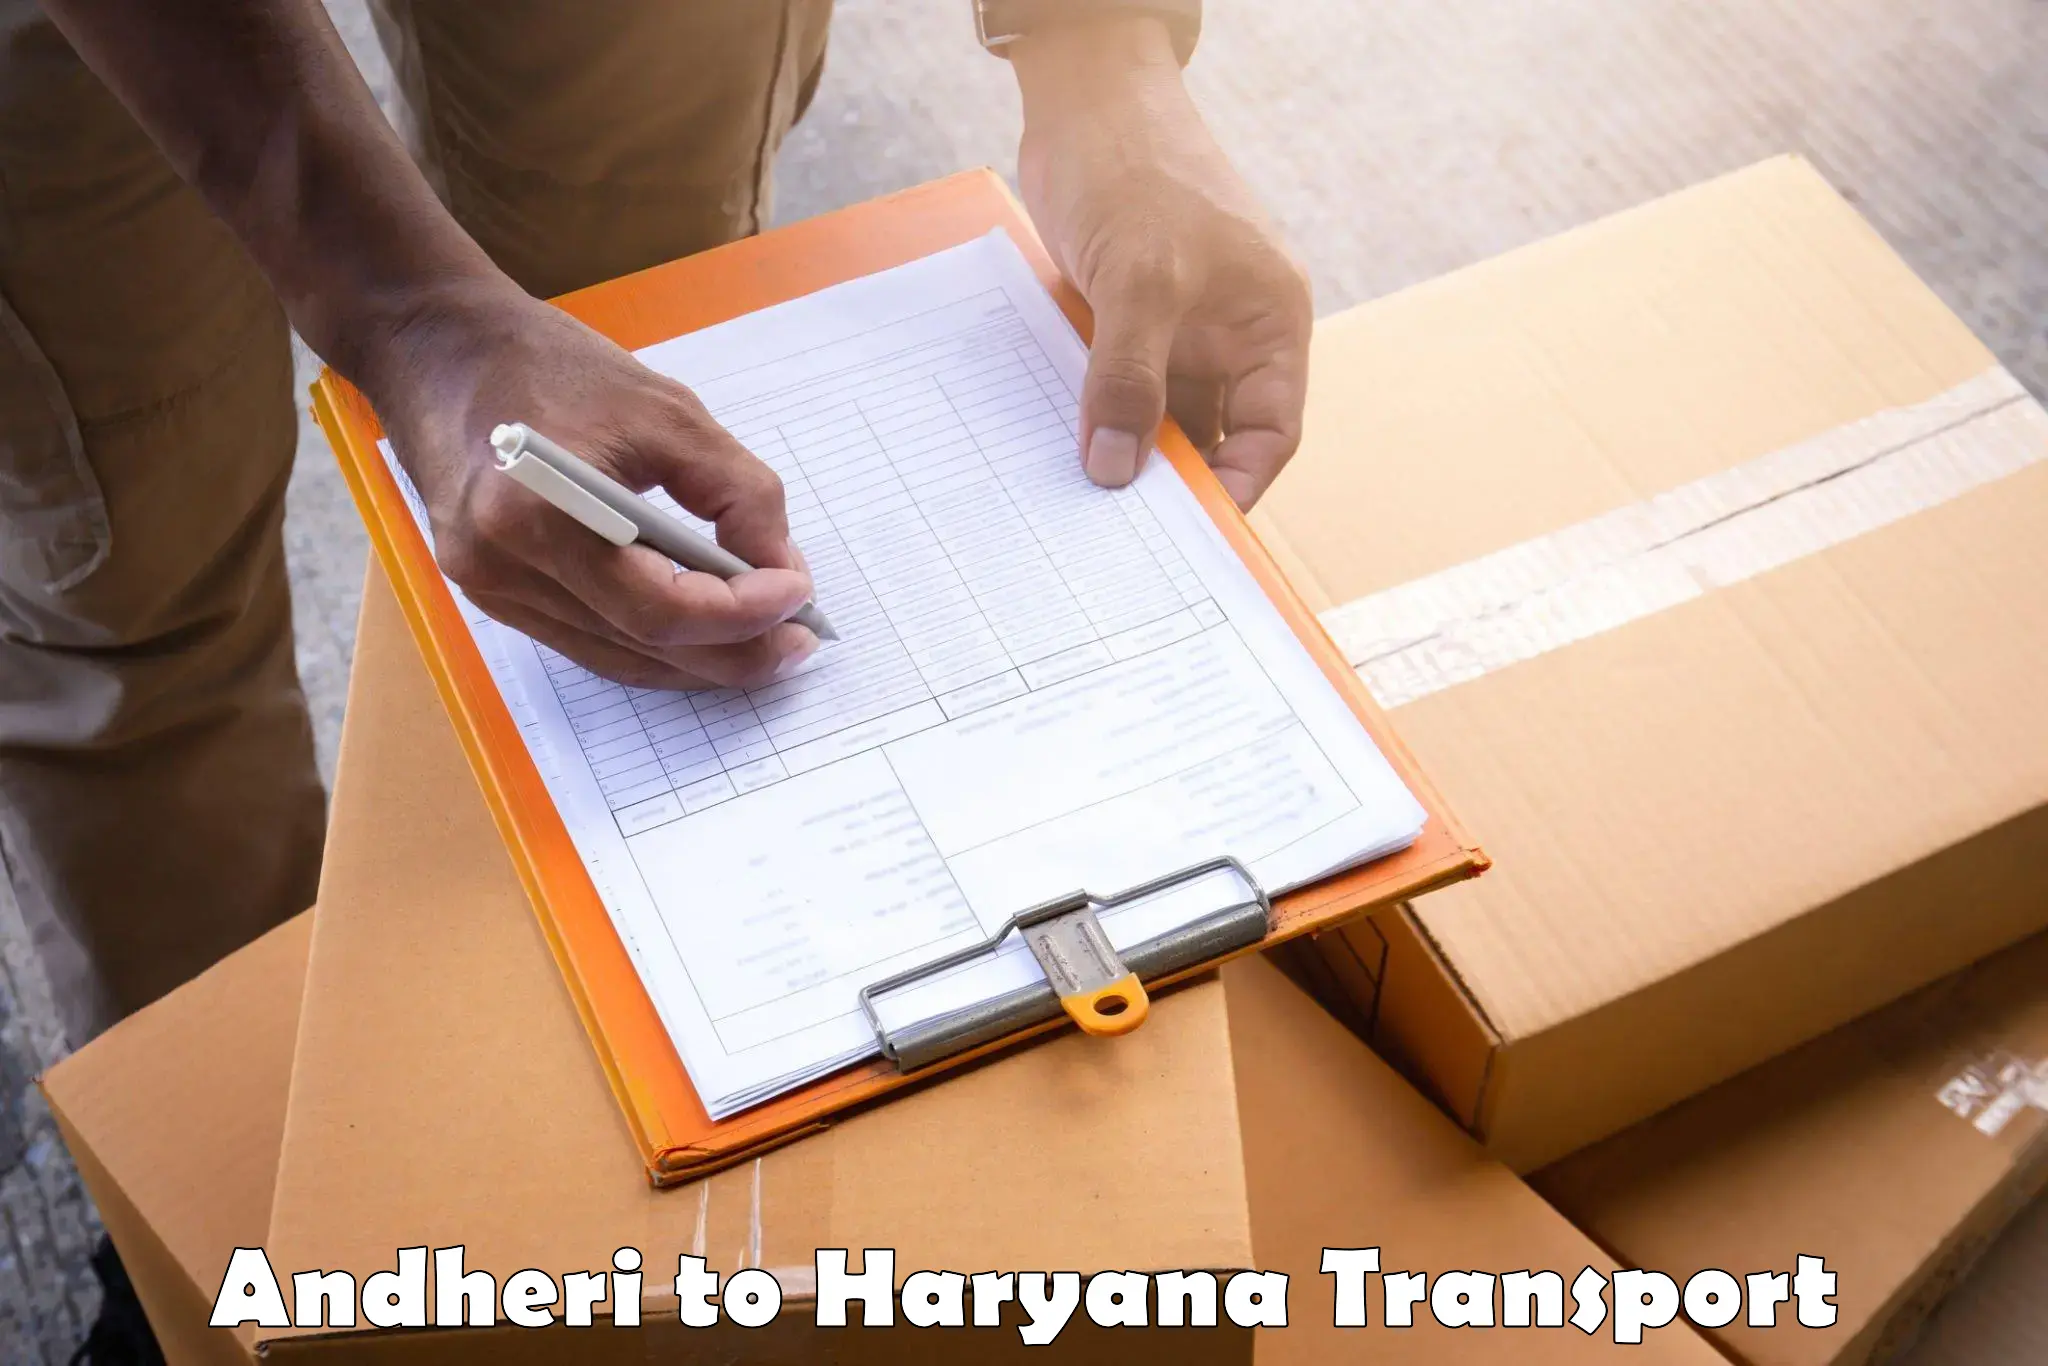 Furniture transport service Andheri to Rewari